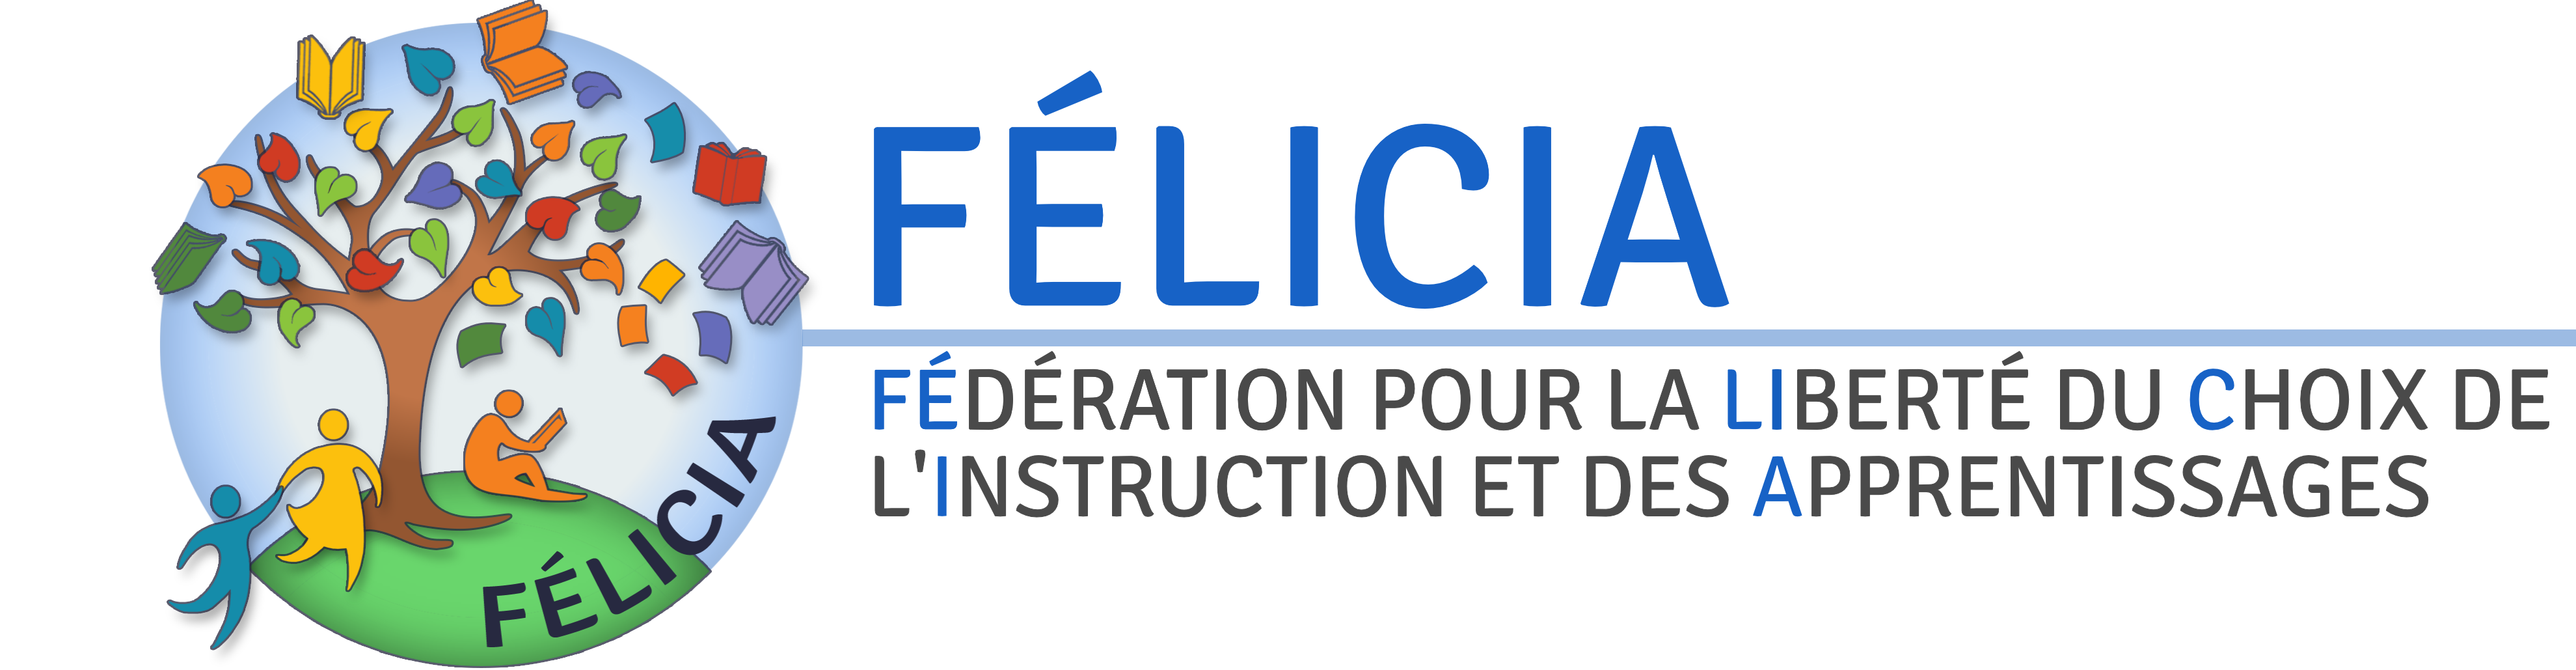 FELICIA - Fédération pour la Liberté de Choix de l'Instruction et des Apprentissages (logo fond transparent pour fond foncé)